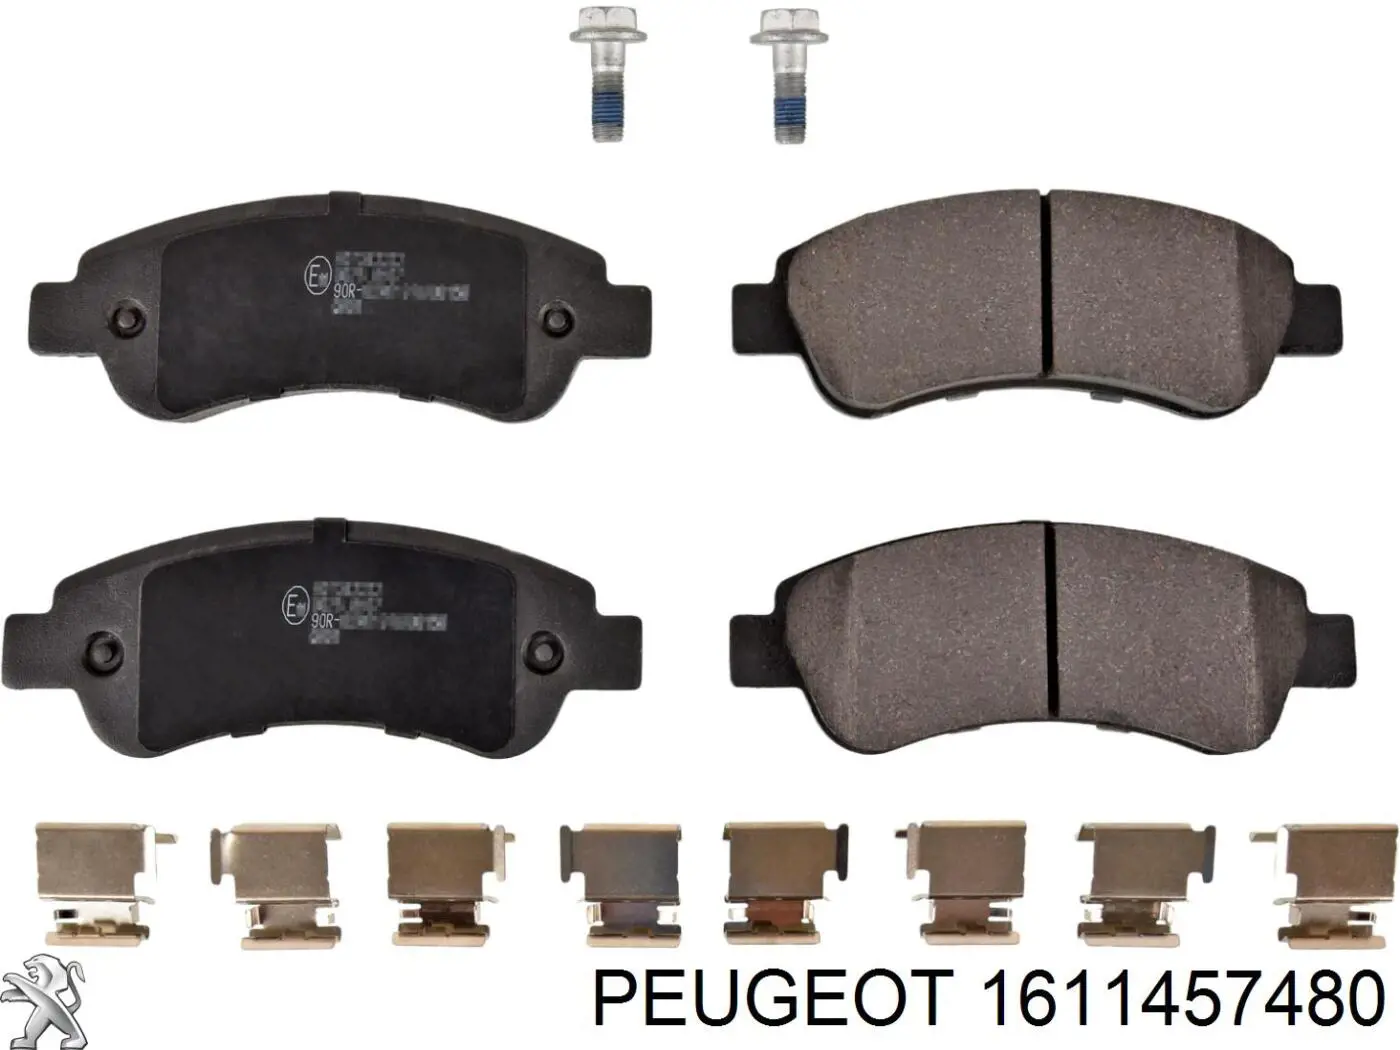 1611457480 Peugeot/Citroen колодки тормозные задние дисковые